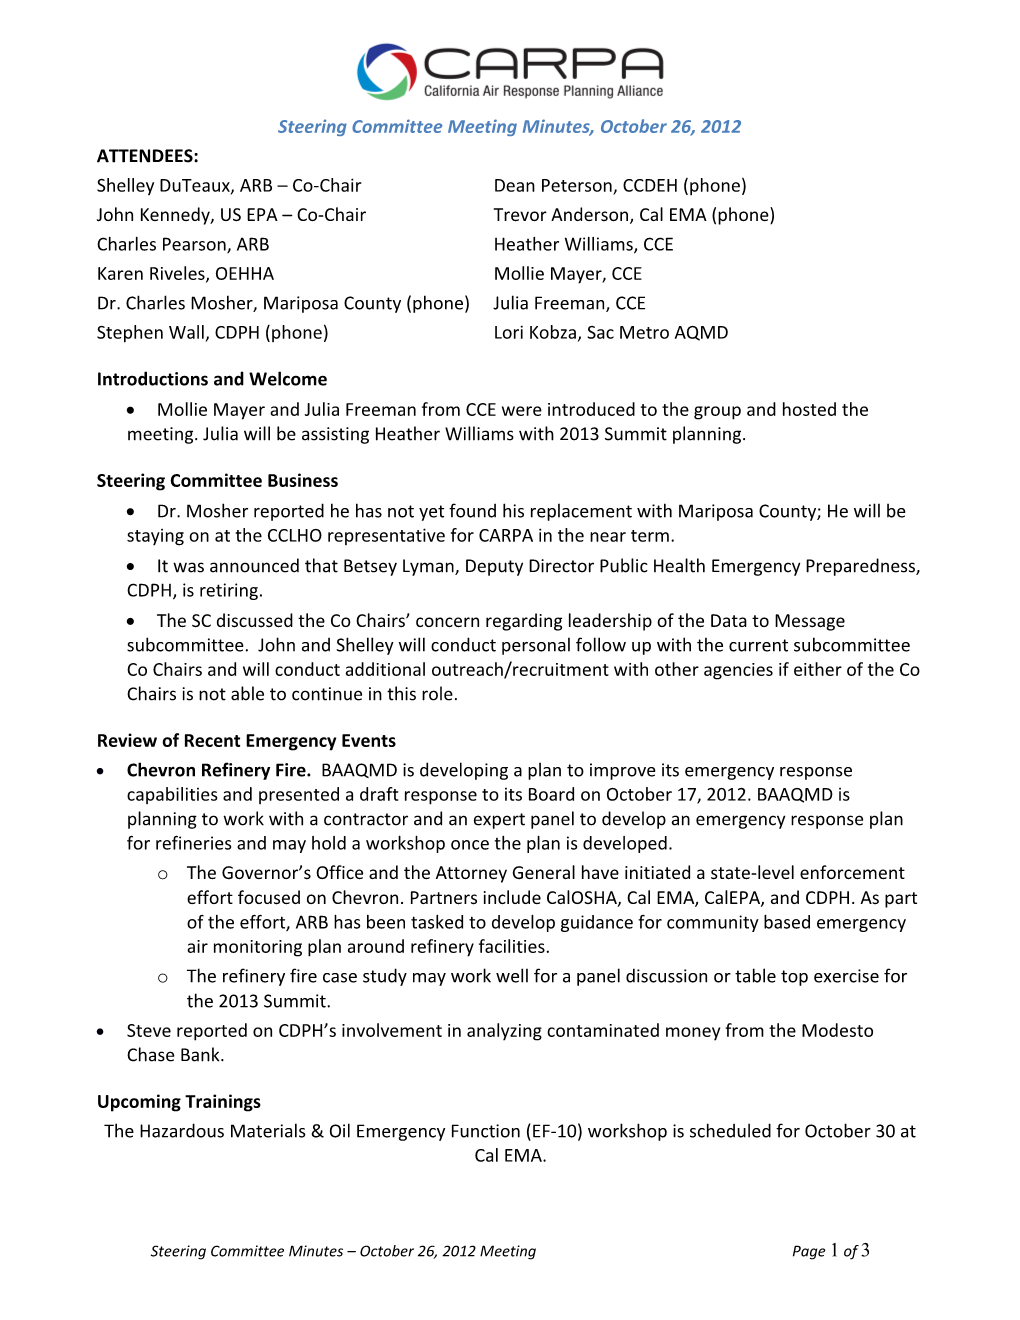 Steering Committee Meeting Minutes,October 26, 2012